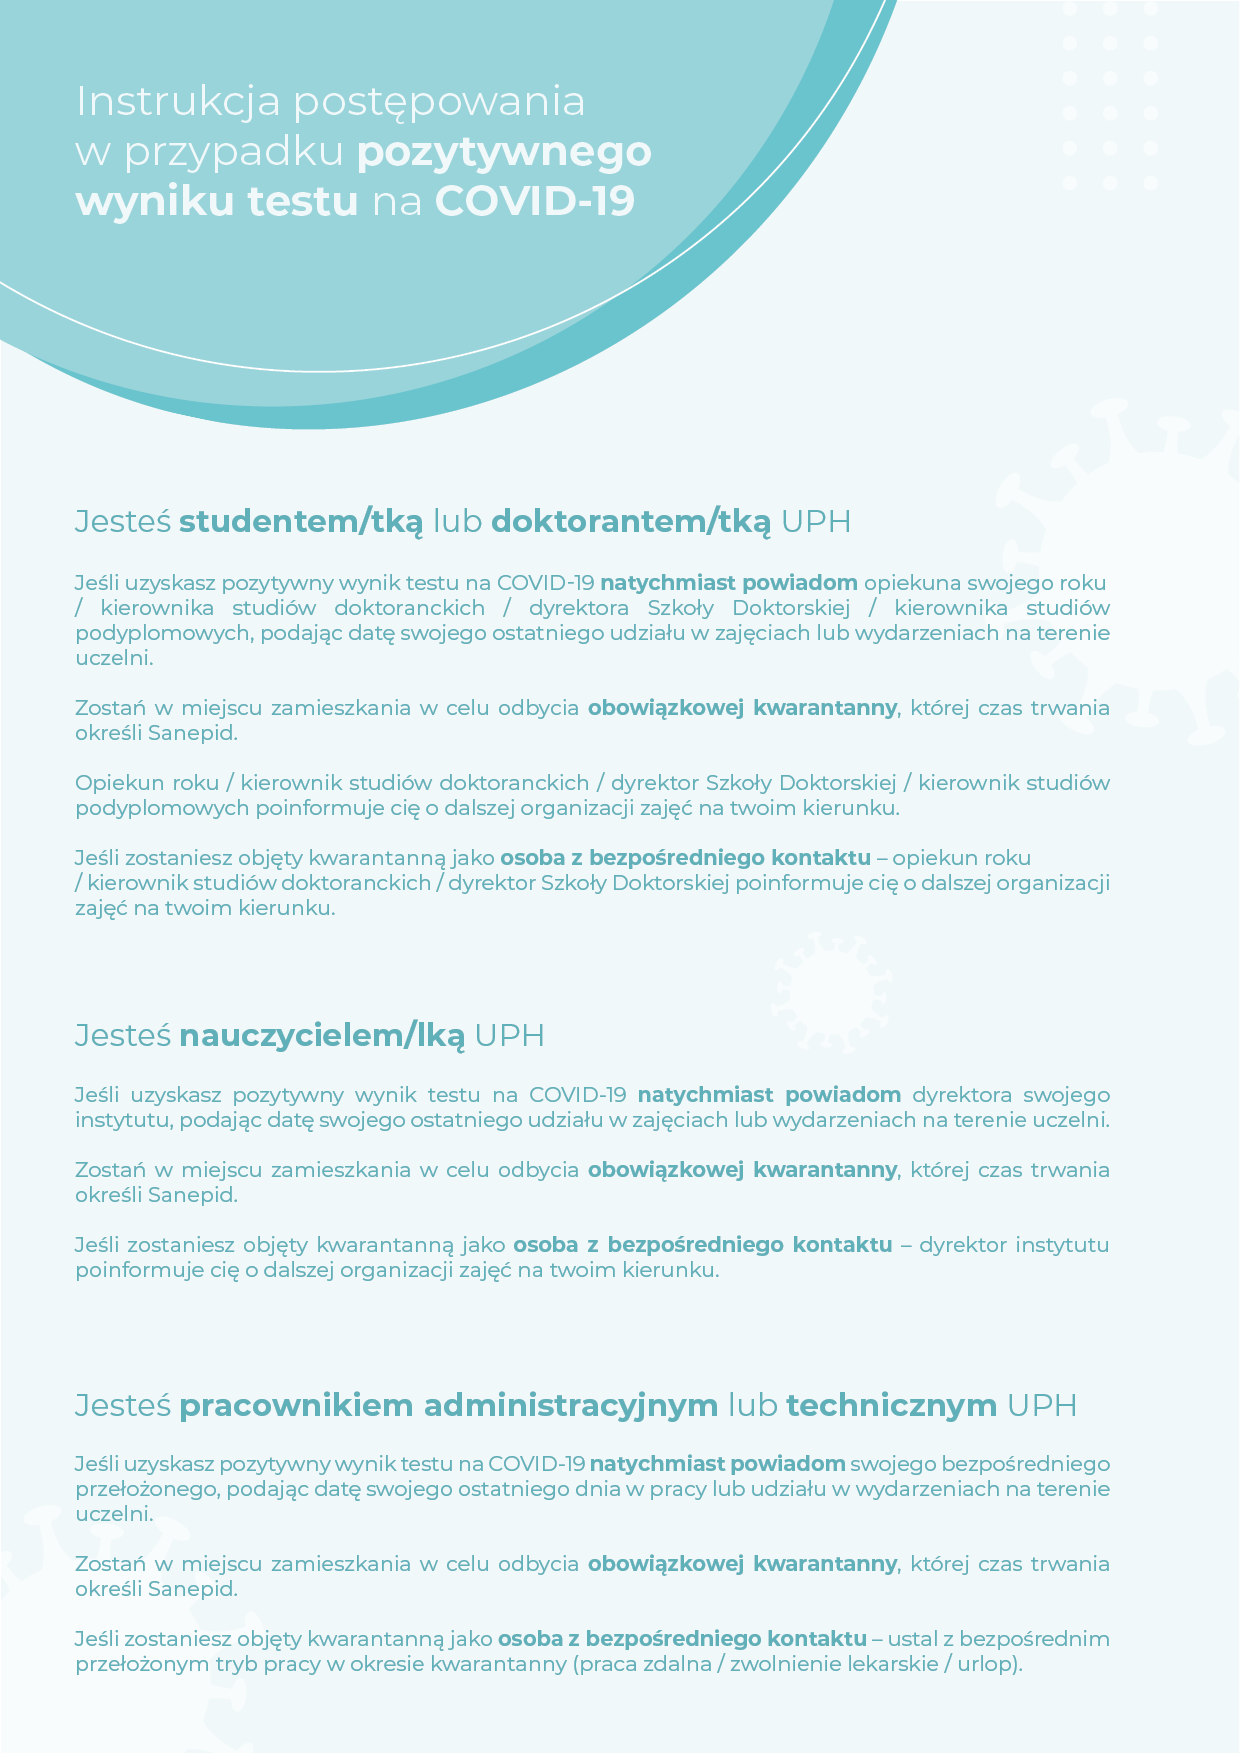 Instrukcja dla studentów i pracowników dot. COVID-19